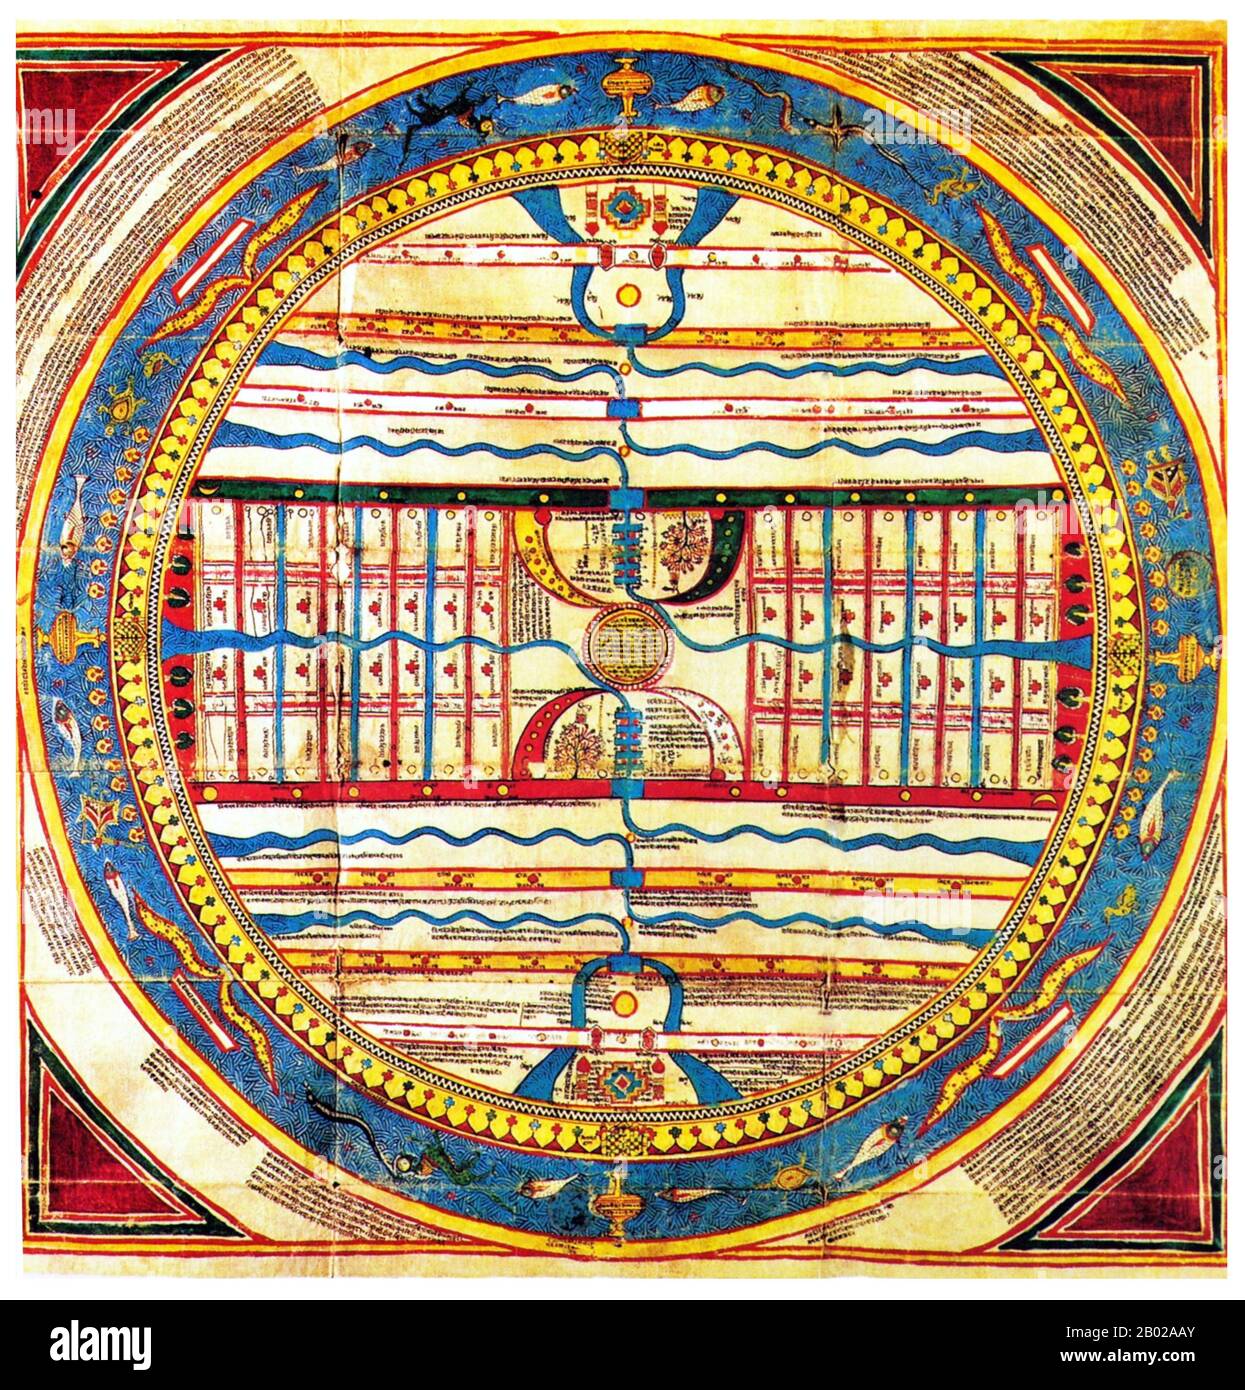 La cosmologie de Jain est la description de la forme et du fonctionnement de l'Univers physique et métaphysique (loka) et de ses constituants (tels que la vie, la matière, l'espace, le temps, etc.) selon le Jainisme, qui comprend les textes canoniques de Jain, les commentaires et les écrits des philosophes de Jain. De tous les dvipa (îles) Jambudvipa est très significatif parce qu'il est au centre de tout l'univers. Jambuddwip est entouré d'un mur très haut et large. Le mur est censé être fait d'or précieux, de diamants et de tels autres bijoux. Même le travail du gril est fait par l'or et les diamants. T Banque D'Images